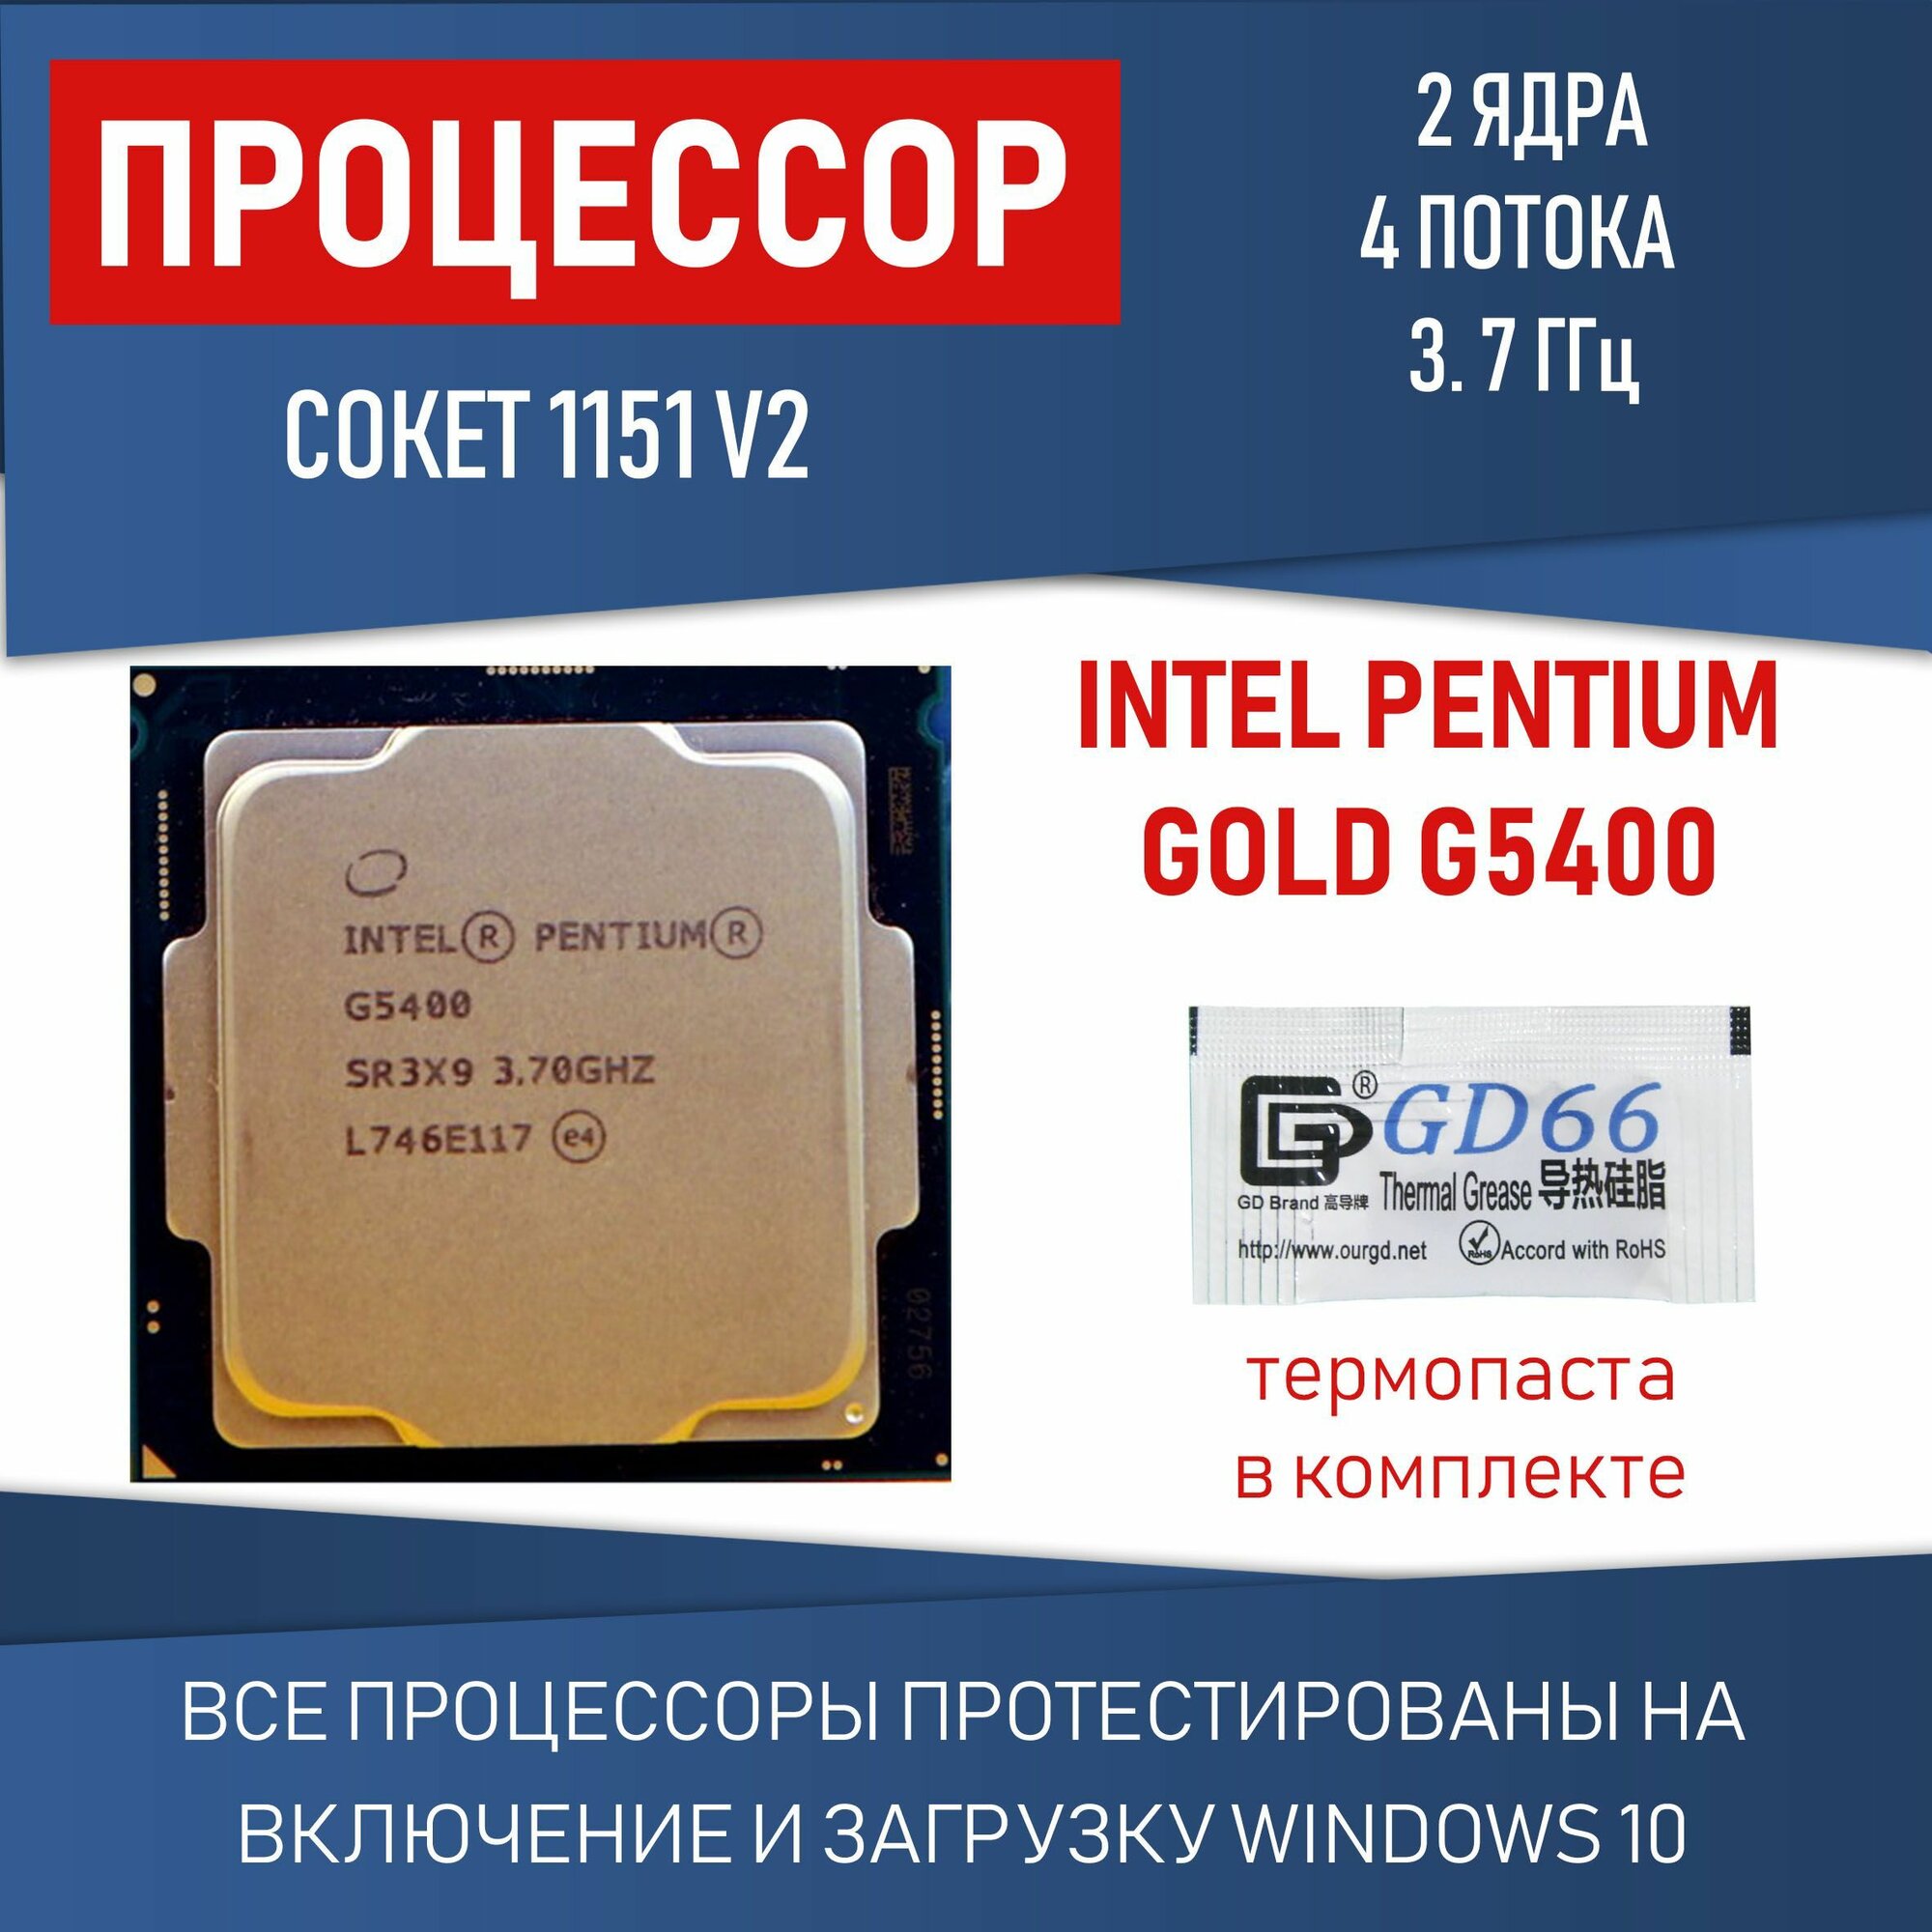 Процессор Intel Pentium Gold G5400 сокет 1151 v2 2 ядра 4 потока 3,7ГГц 54 Вт OEM